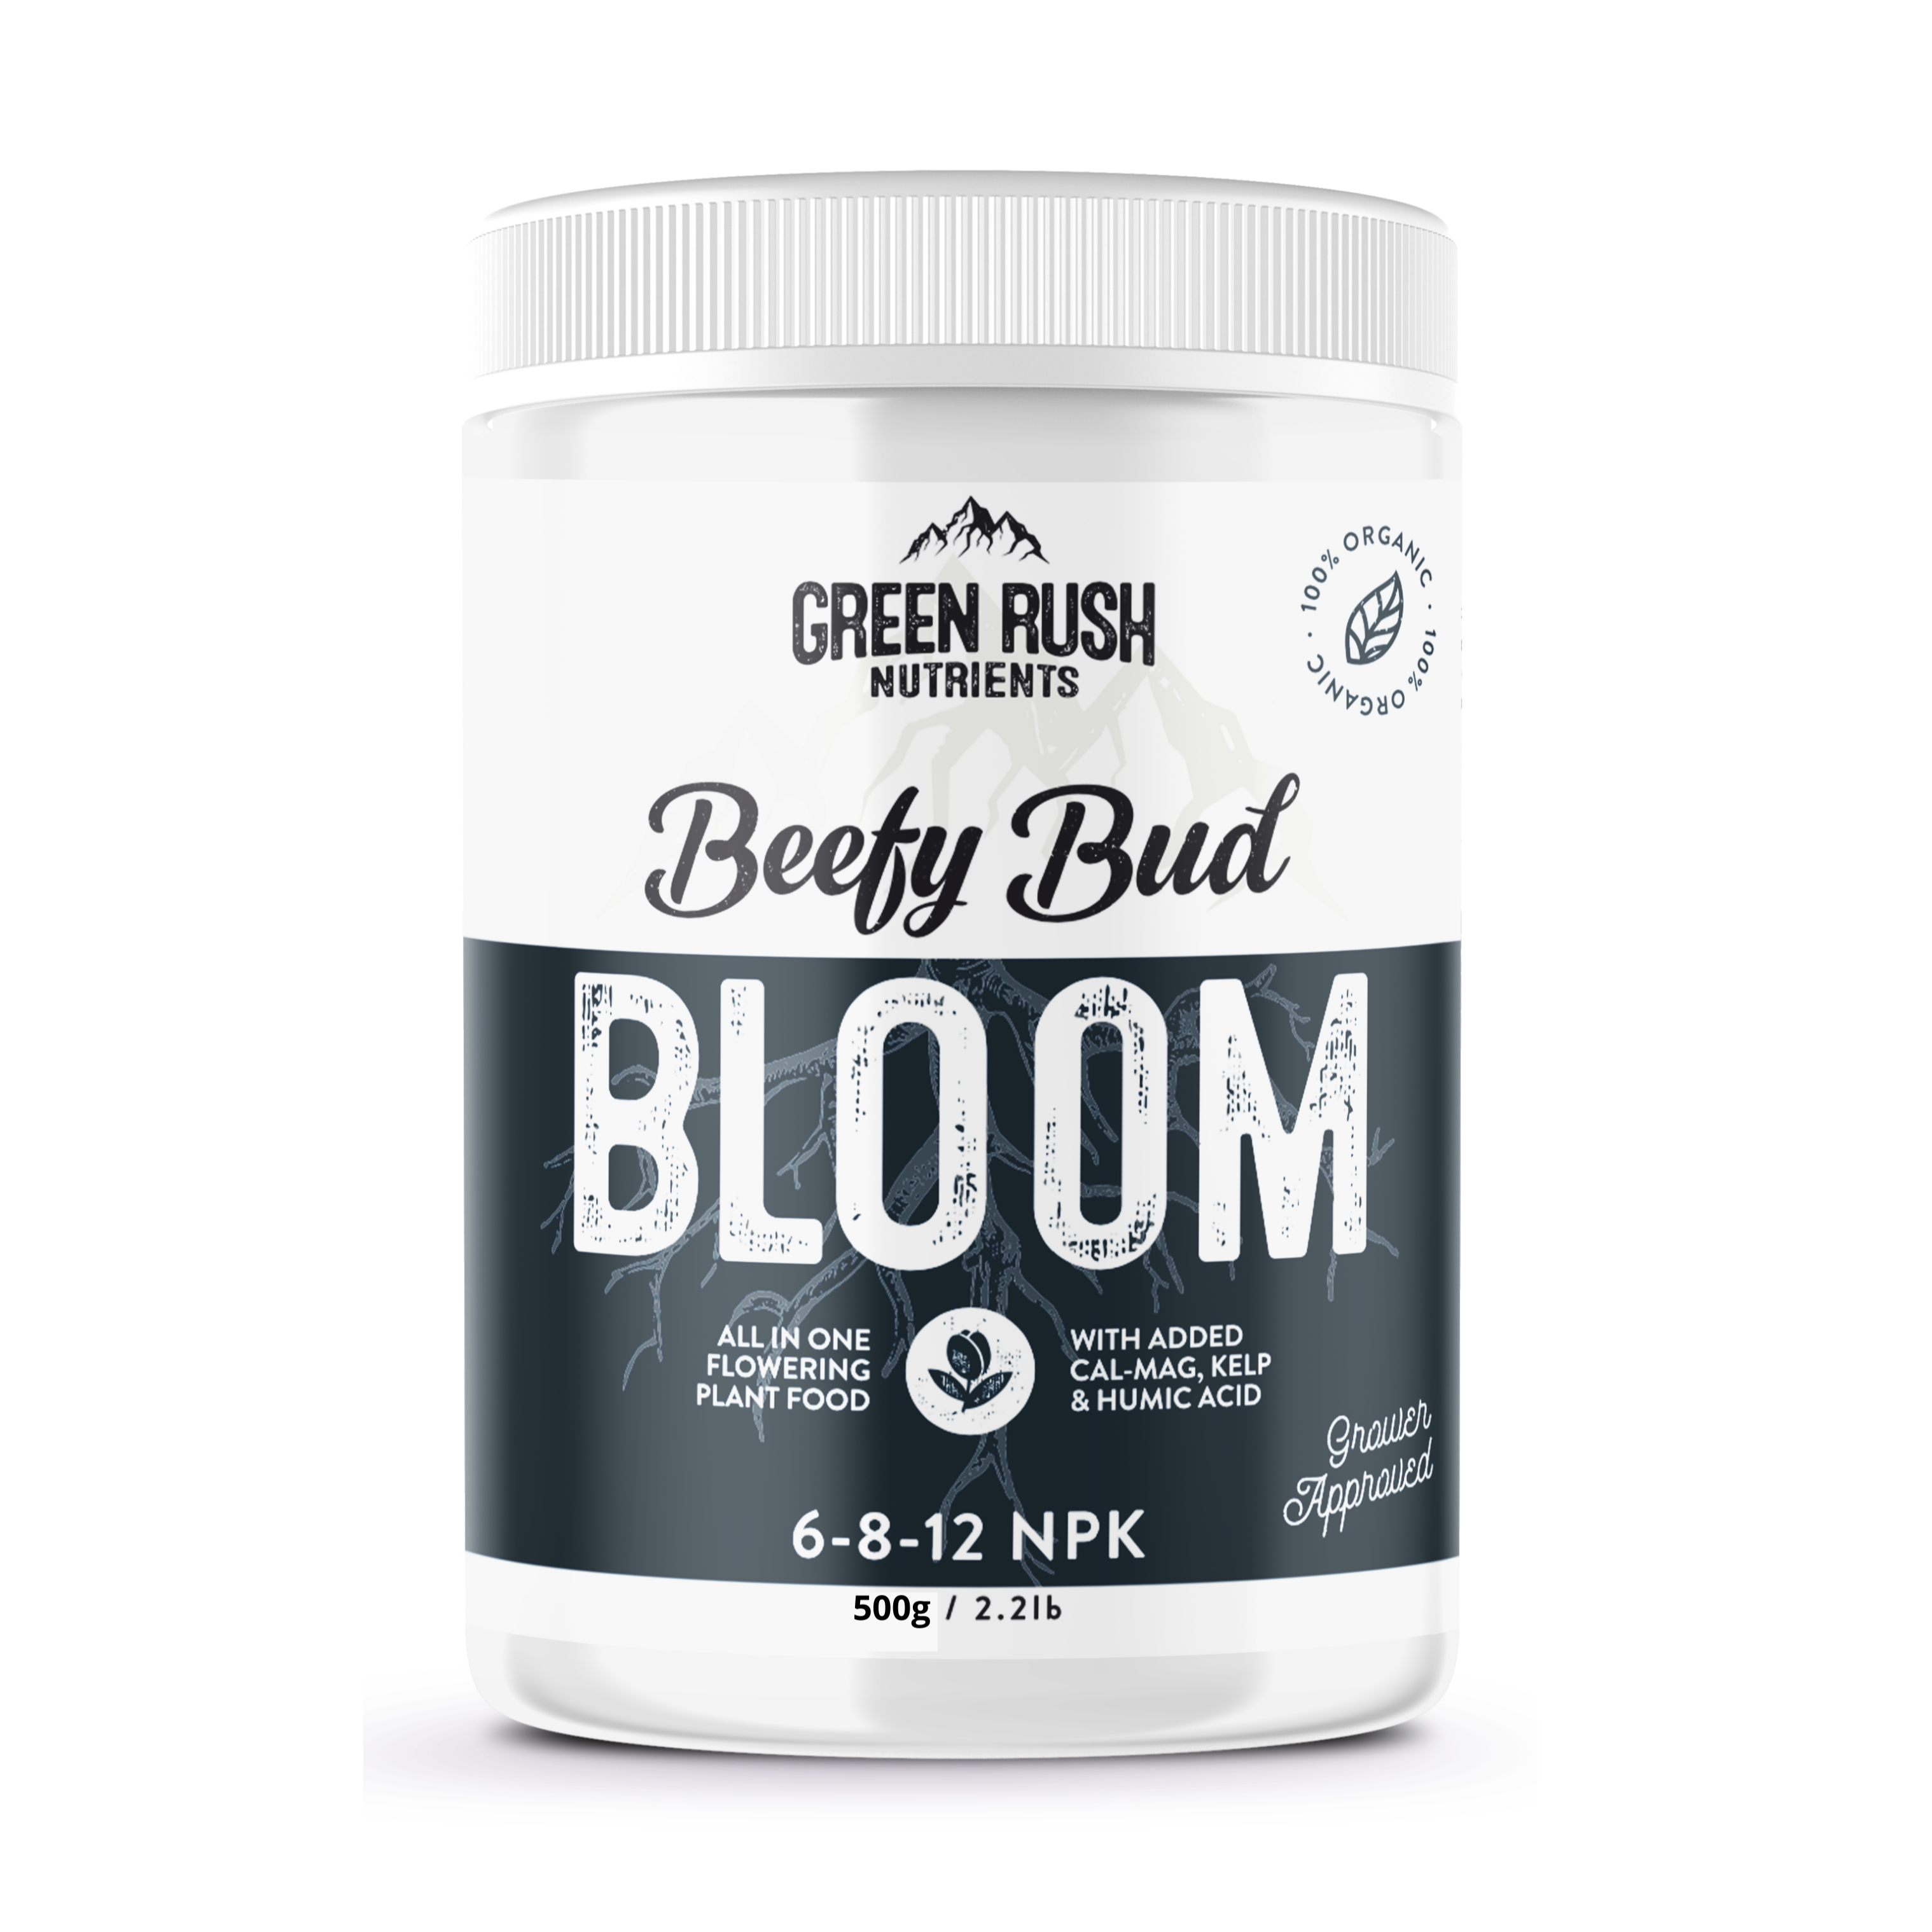 Beefy Bud Bloom Organic Flowering Stage Plant Nutrients